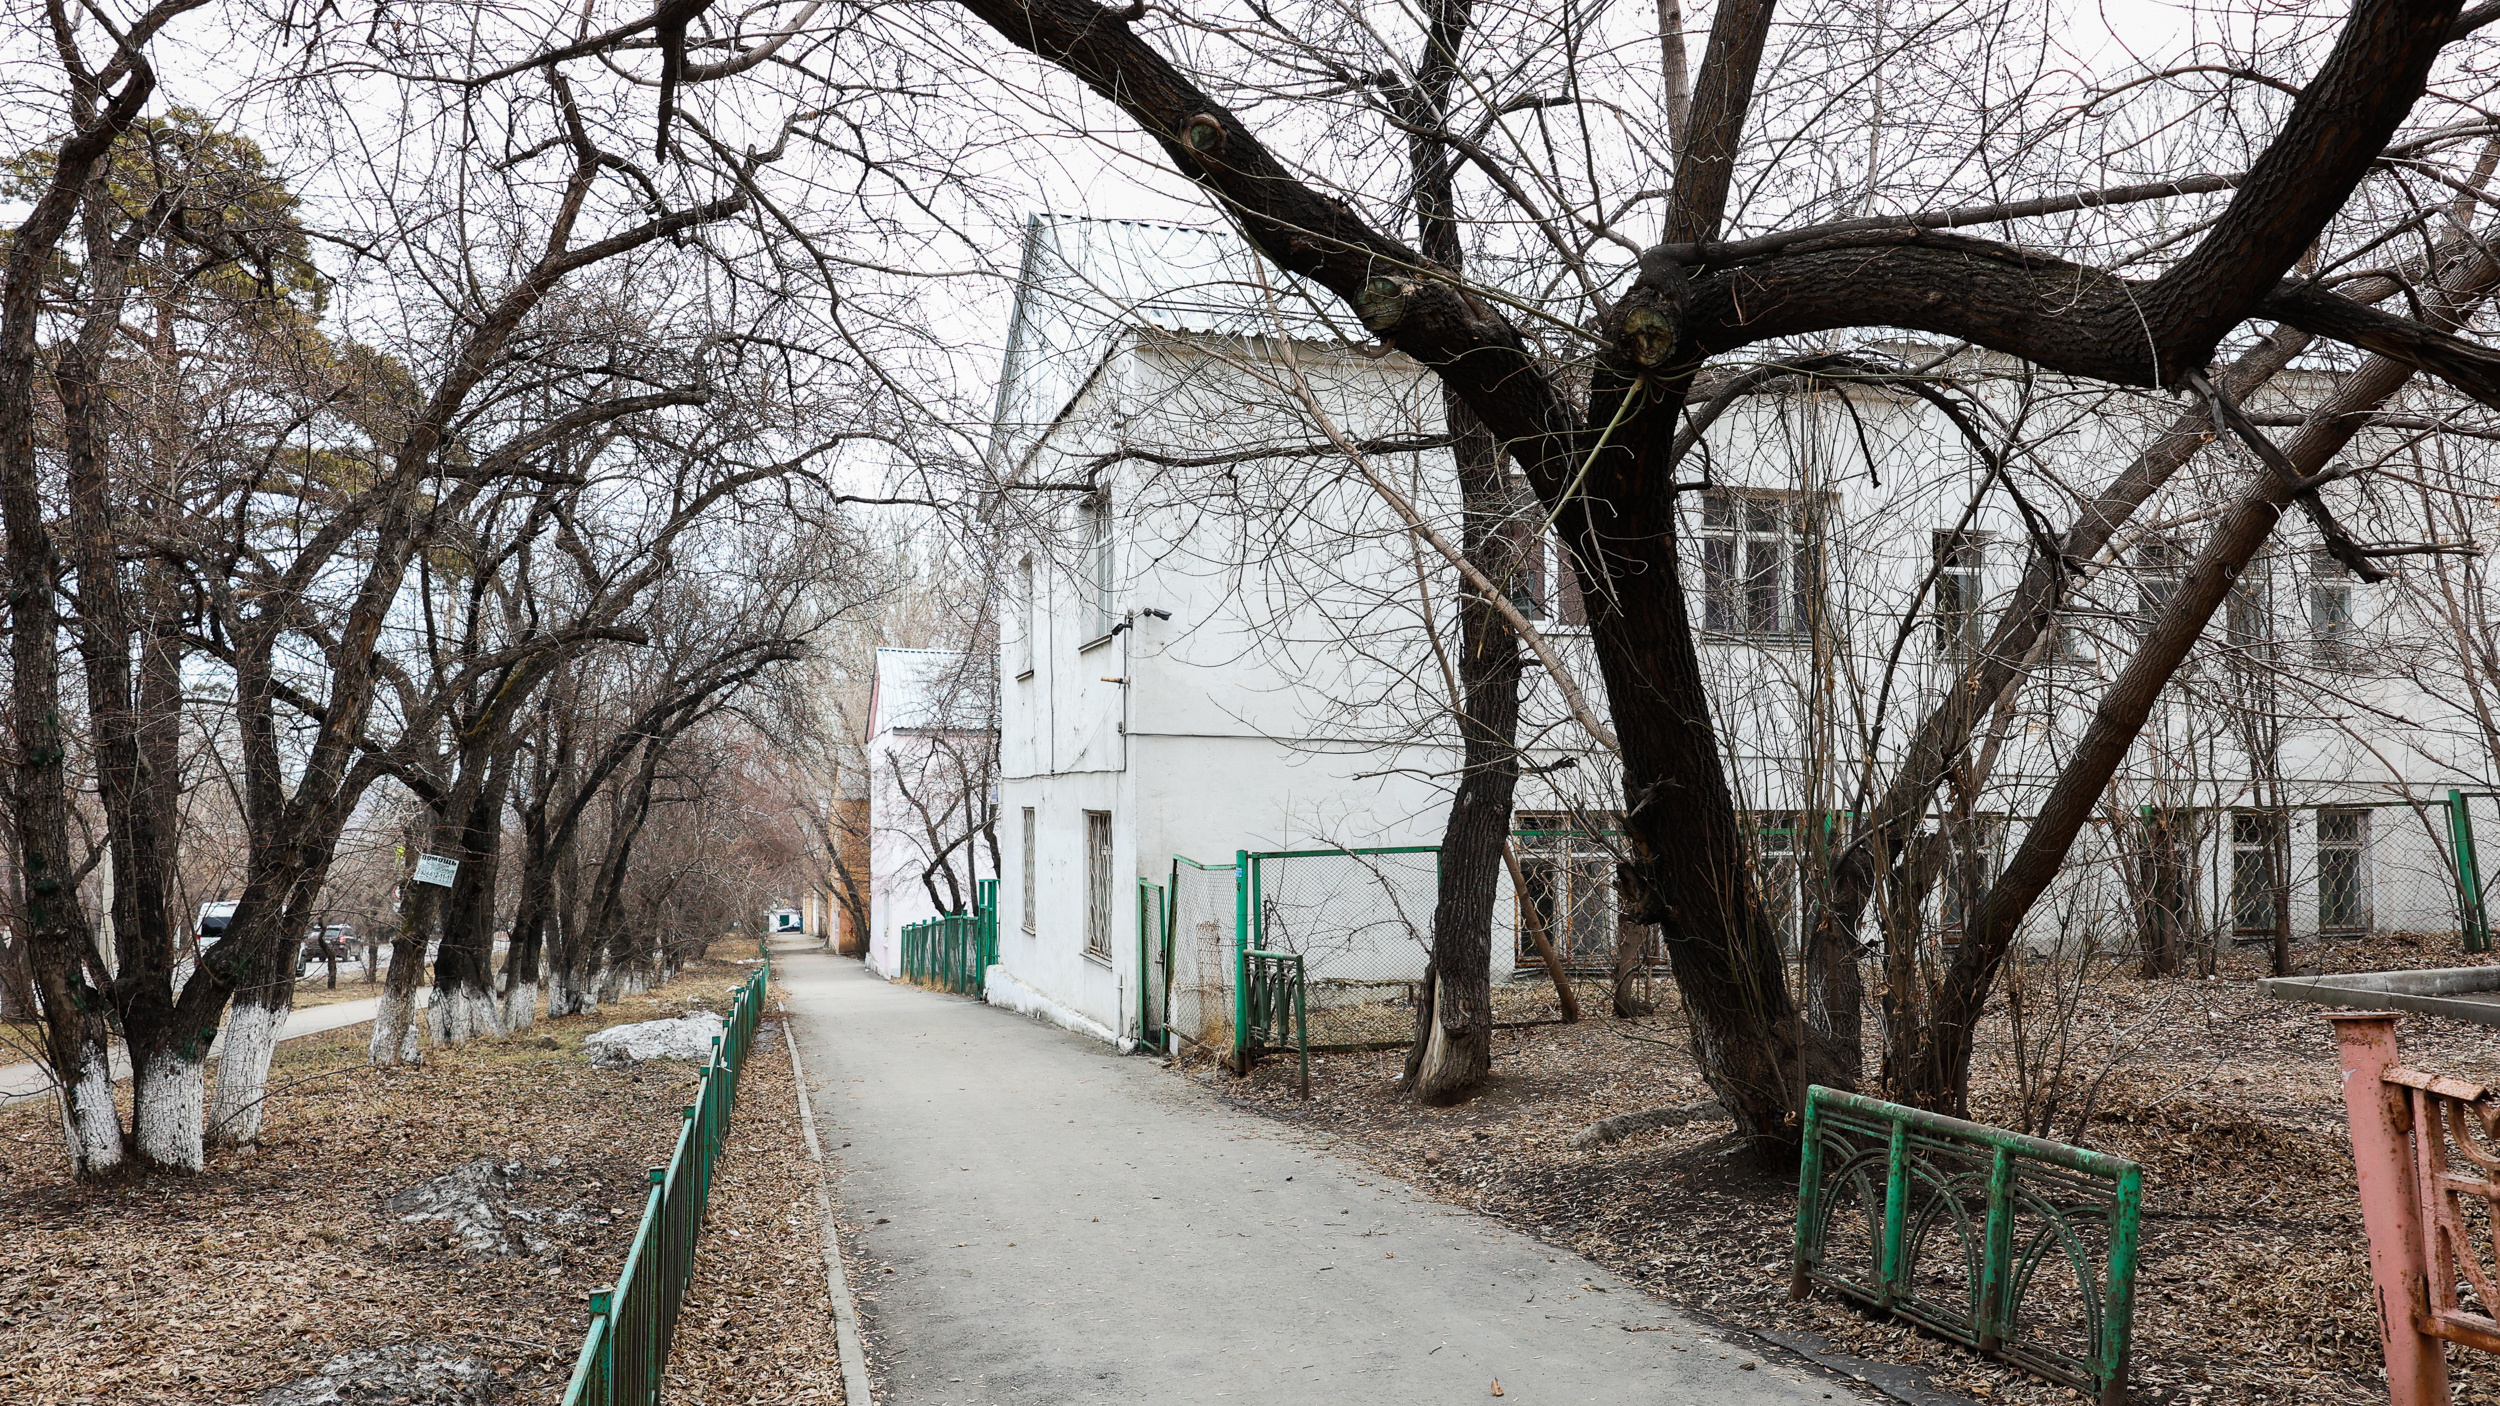 Похожие дома, гаражи и кот-экскурсовод. Разглядываем кусочек улицы Маяковского напротив Кайской рощи в Иркутске